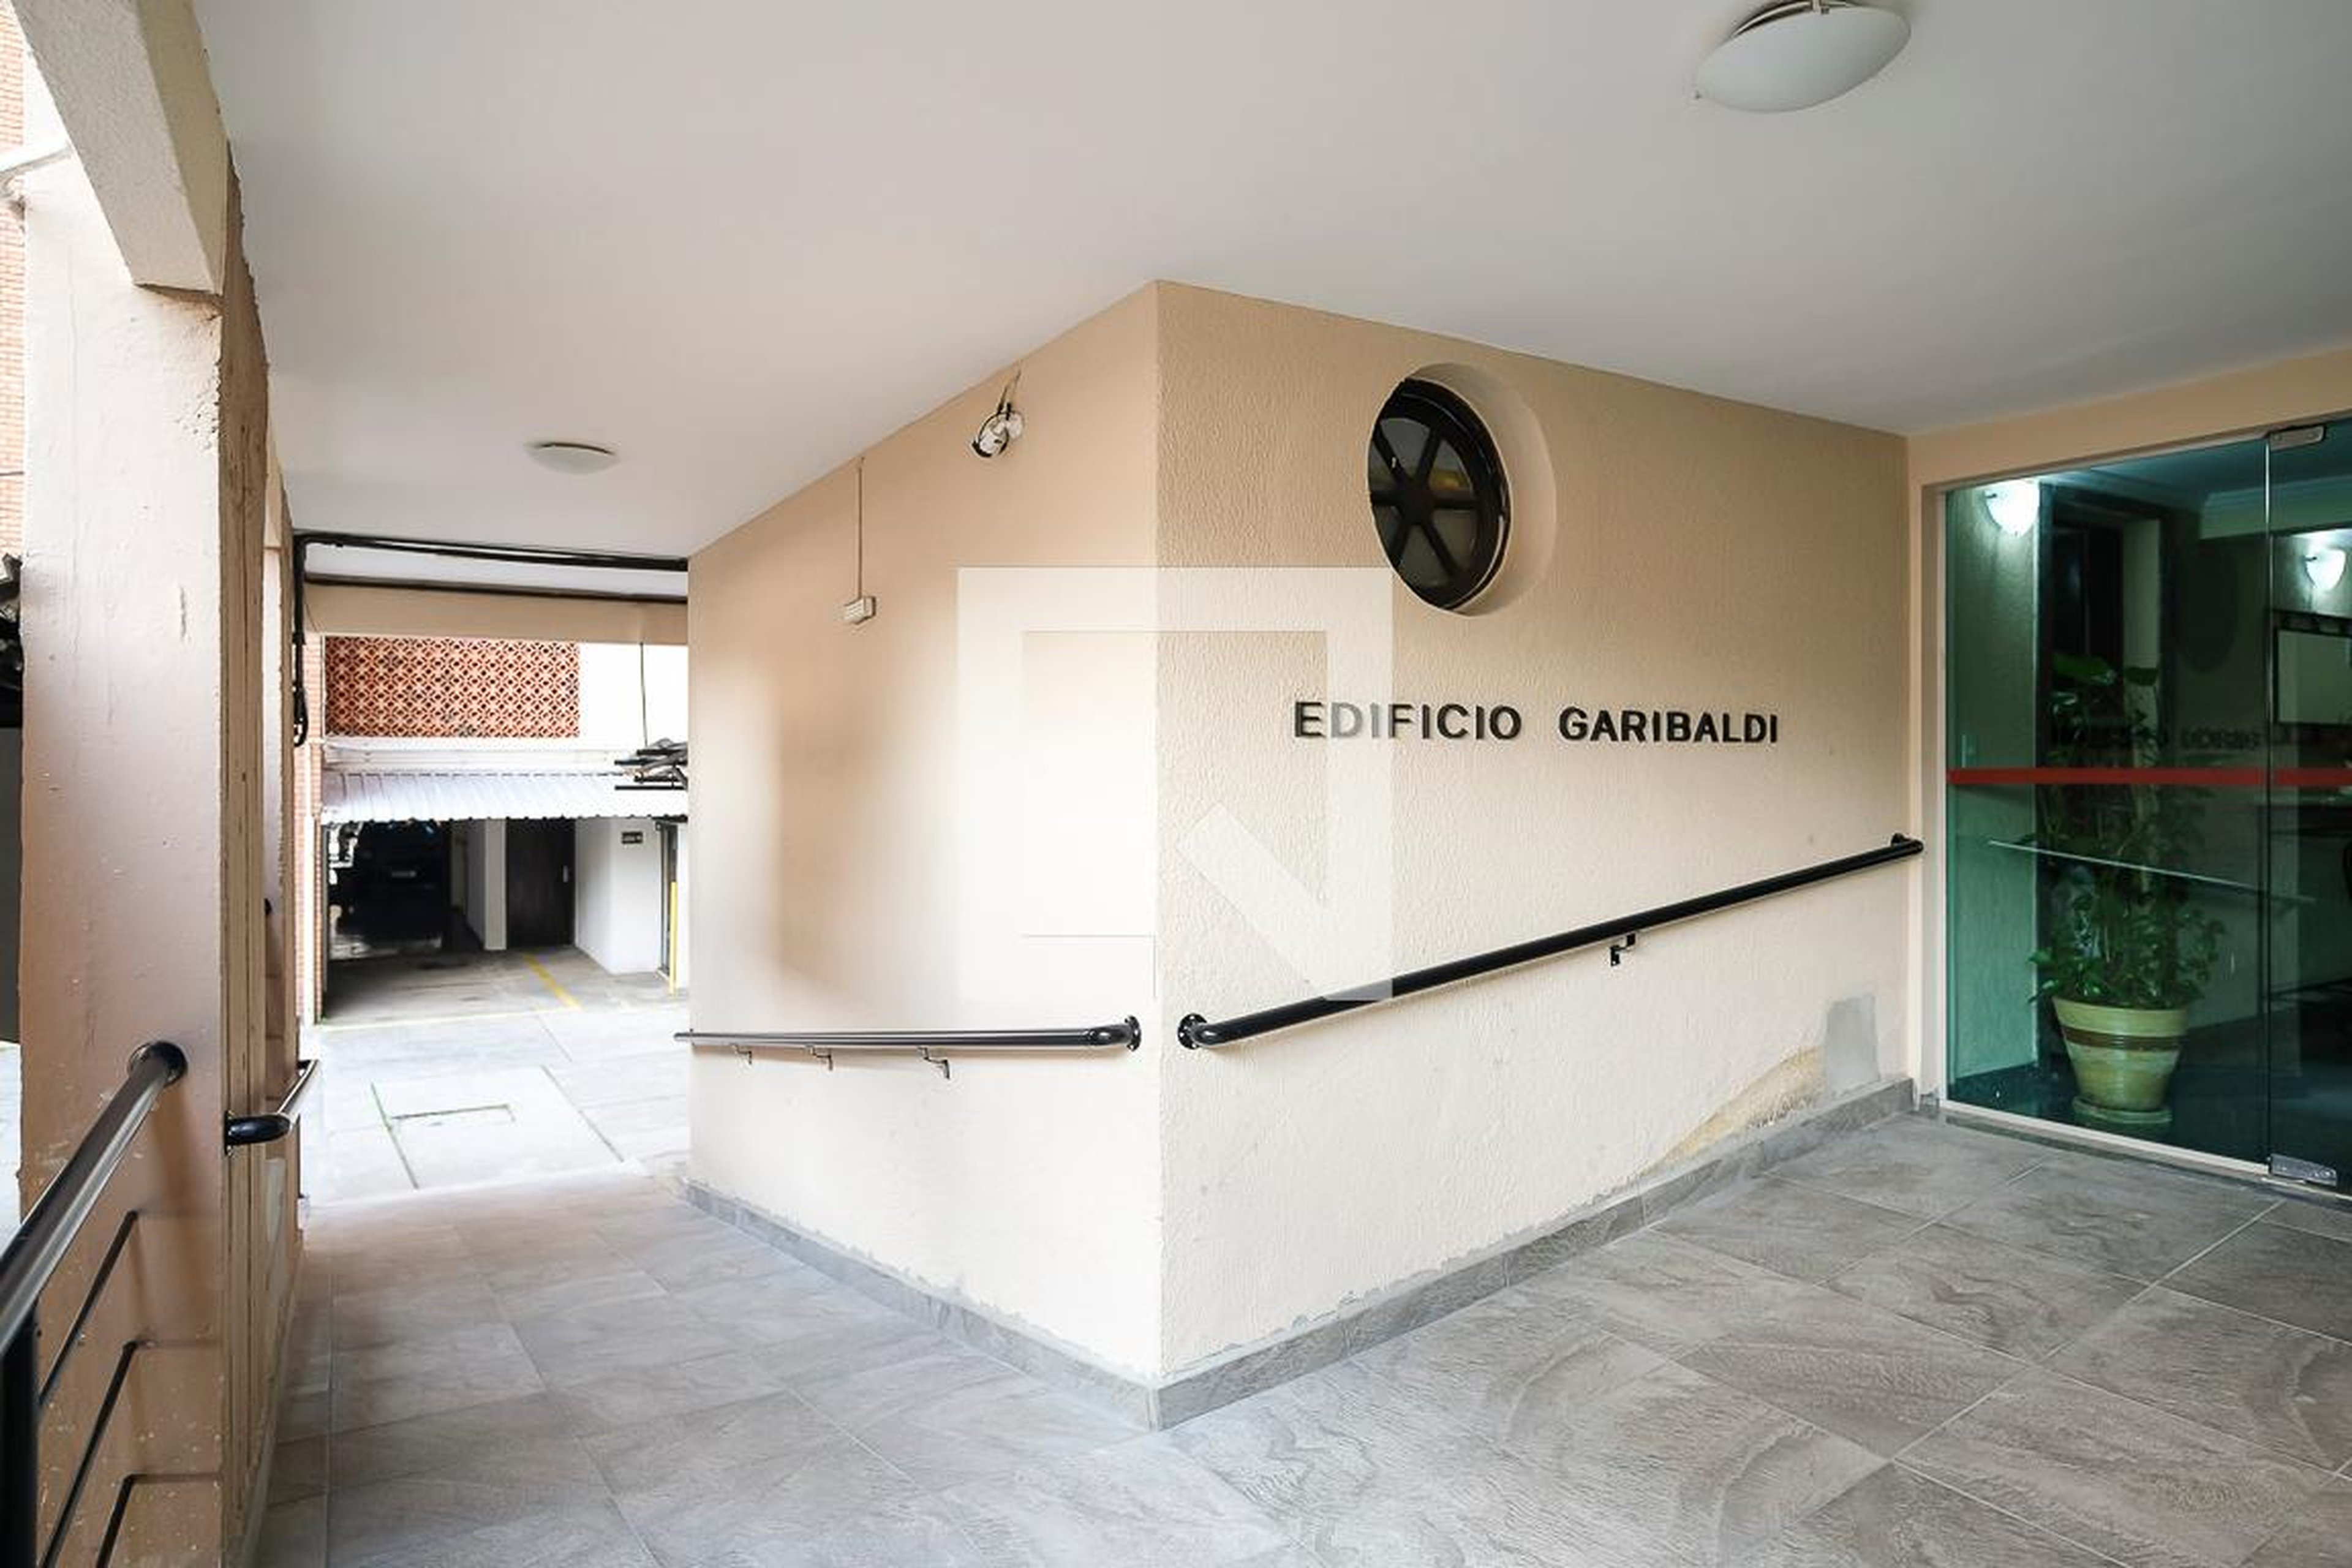 Hall de entrada - Conjunto Libertadoresedifício Garibaldi